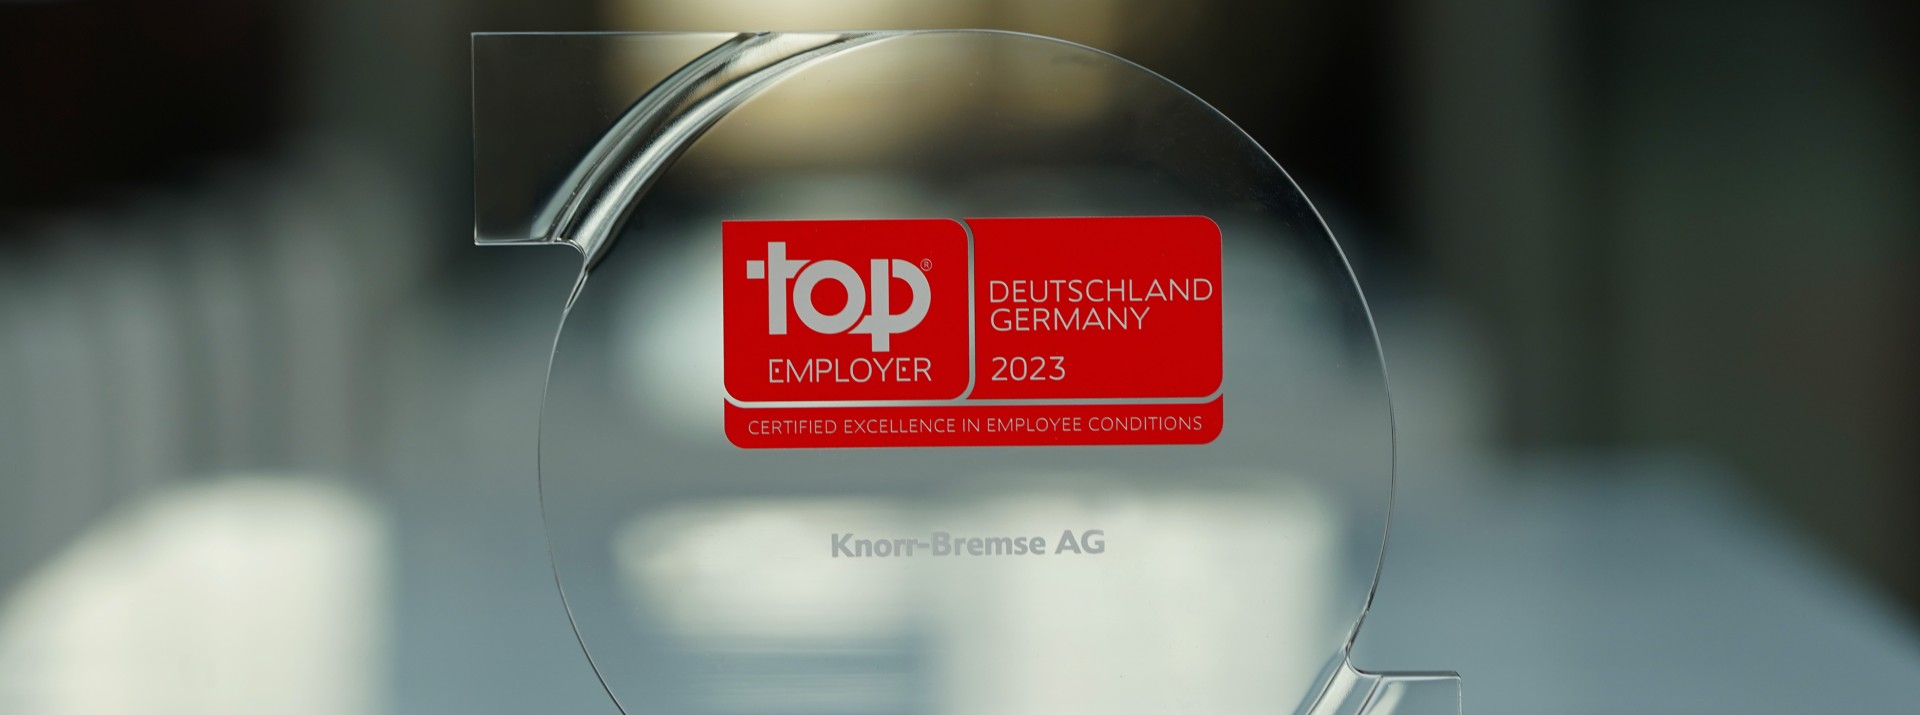 Eine Großaufnahme des Top Employer Awards, den Knorr-Bremse zum zehnten Mal in Folge für seine Arbeitgeberleistungen erhalten hat.